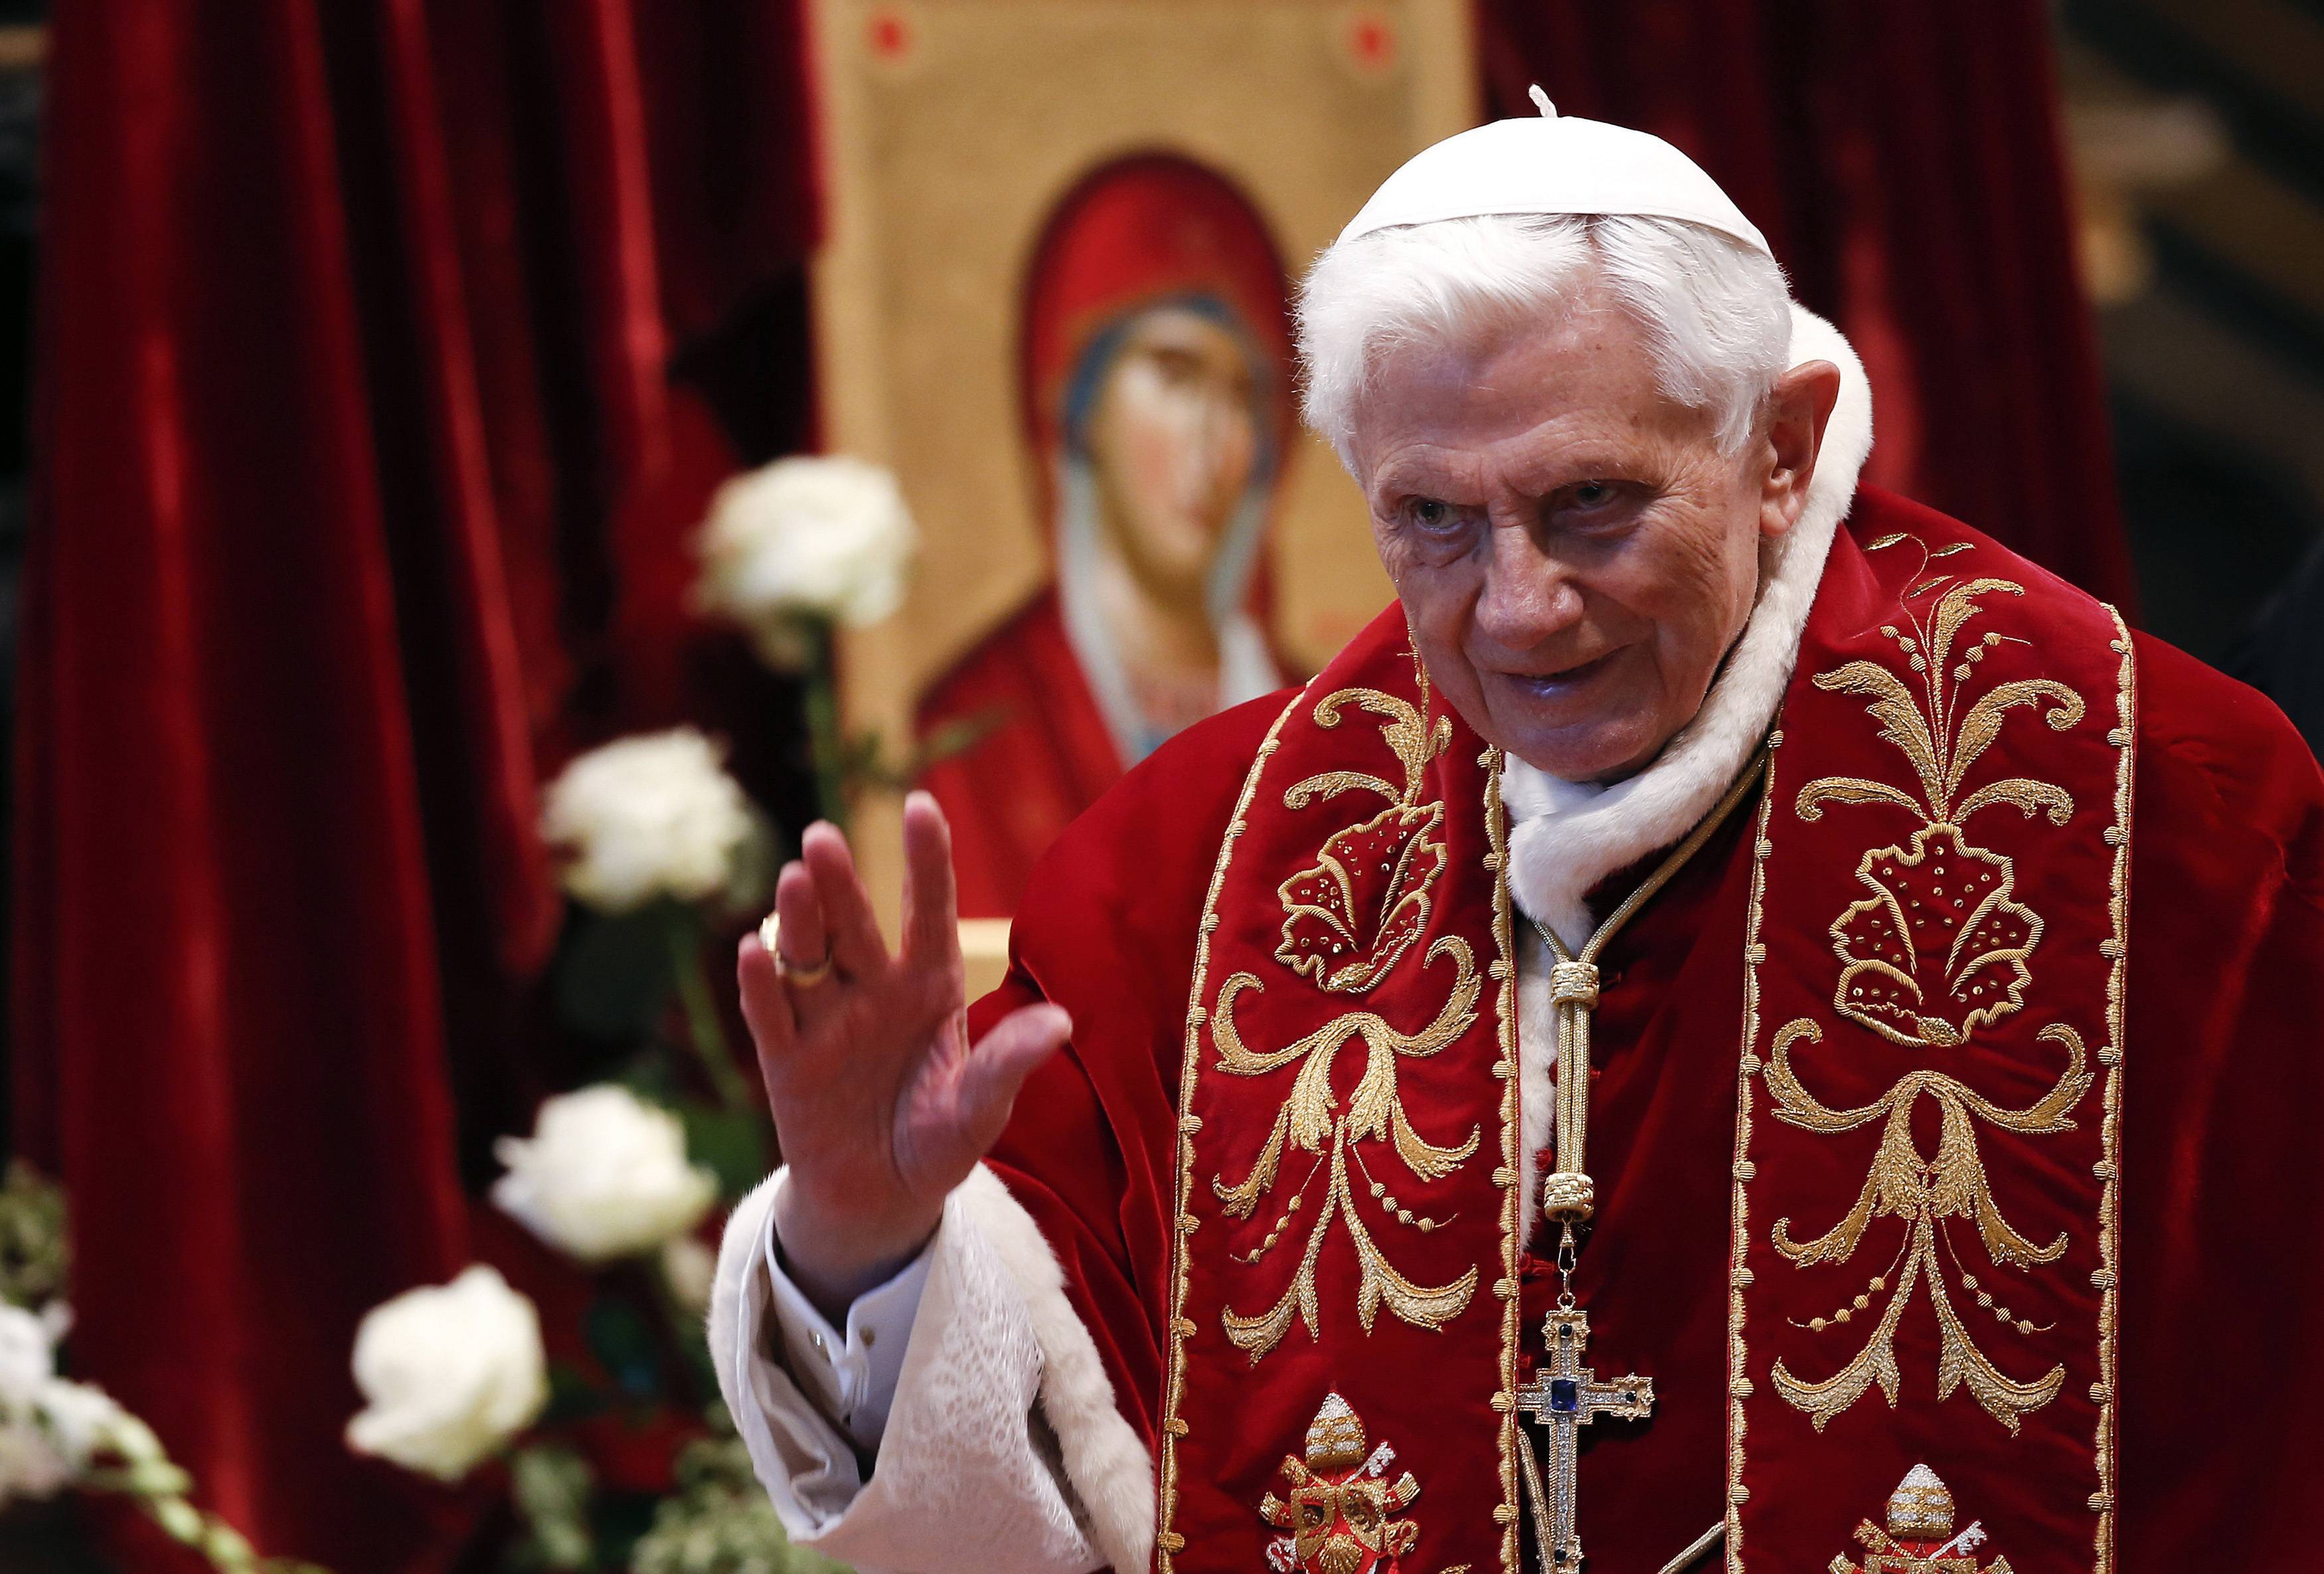 ΒΟΜΒΑ στο Βατικανό! Παραιτείται στις 28 Φεβρουαρίου ο Πάπας Βενέδικτος! “Με εγκατέλειψαν οι δυνάμεις μου”